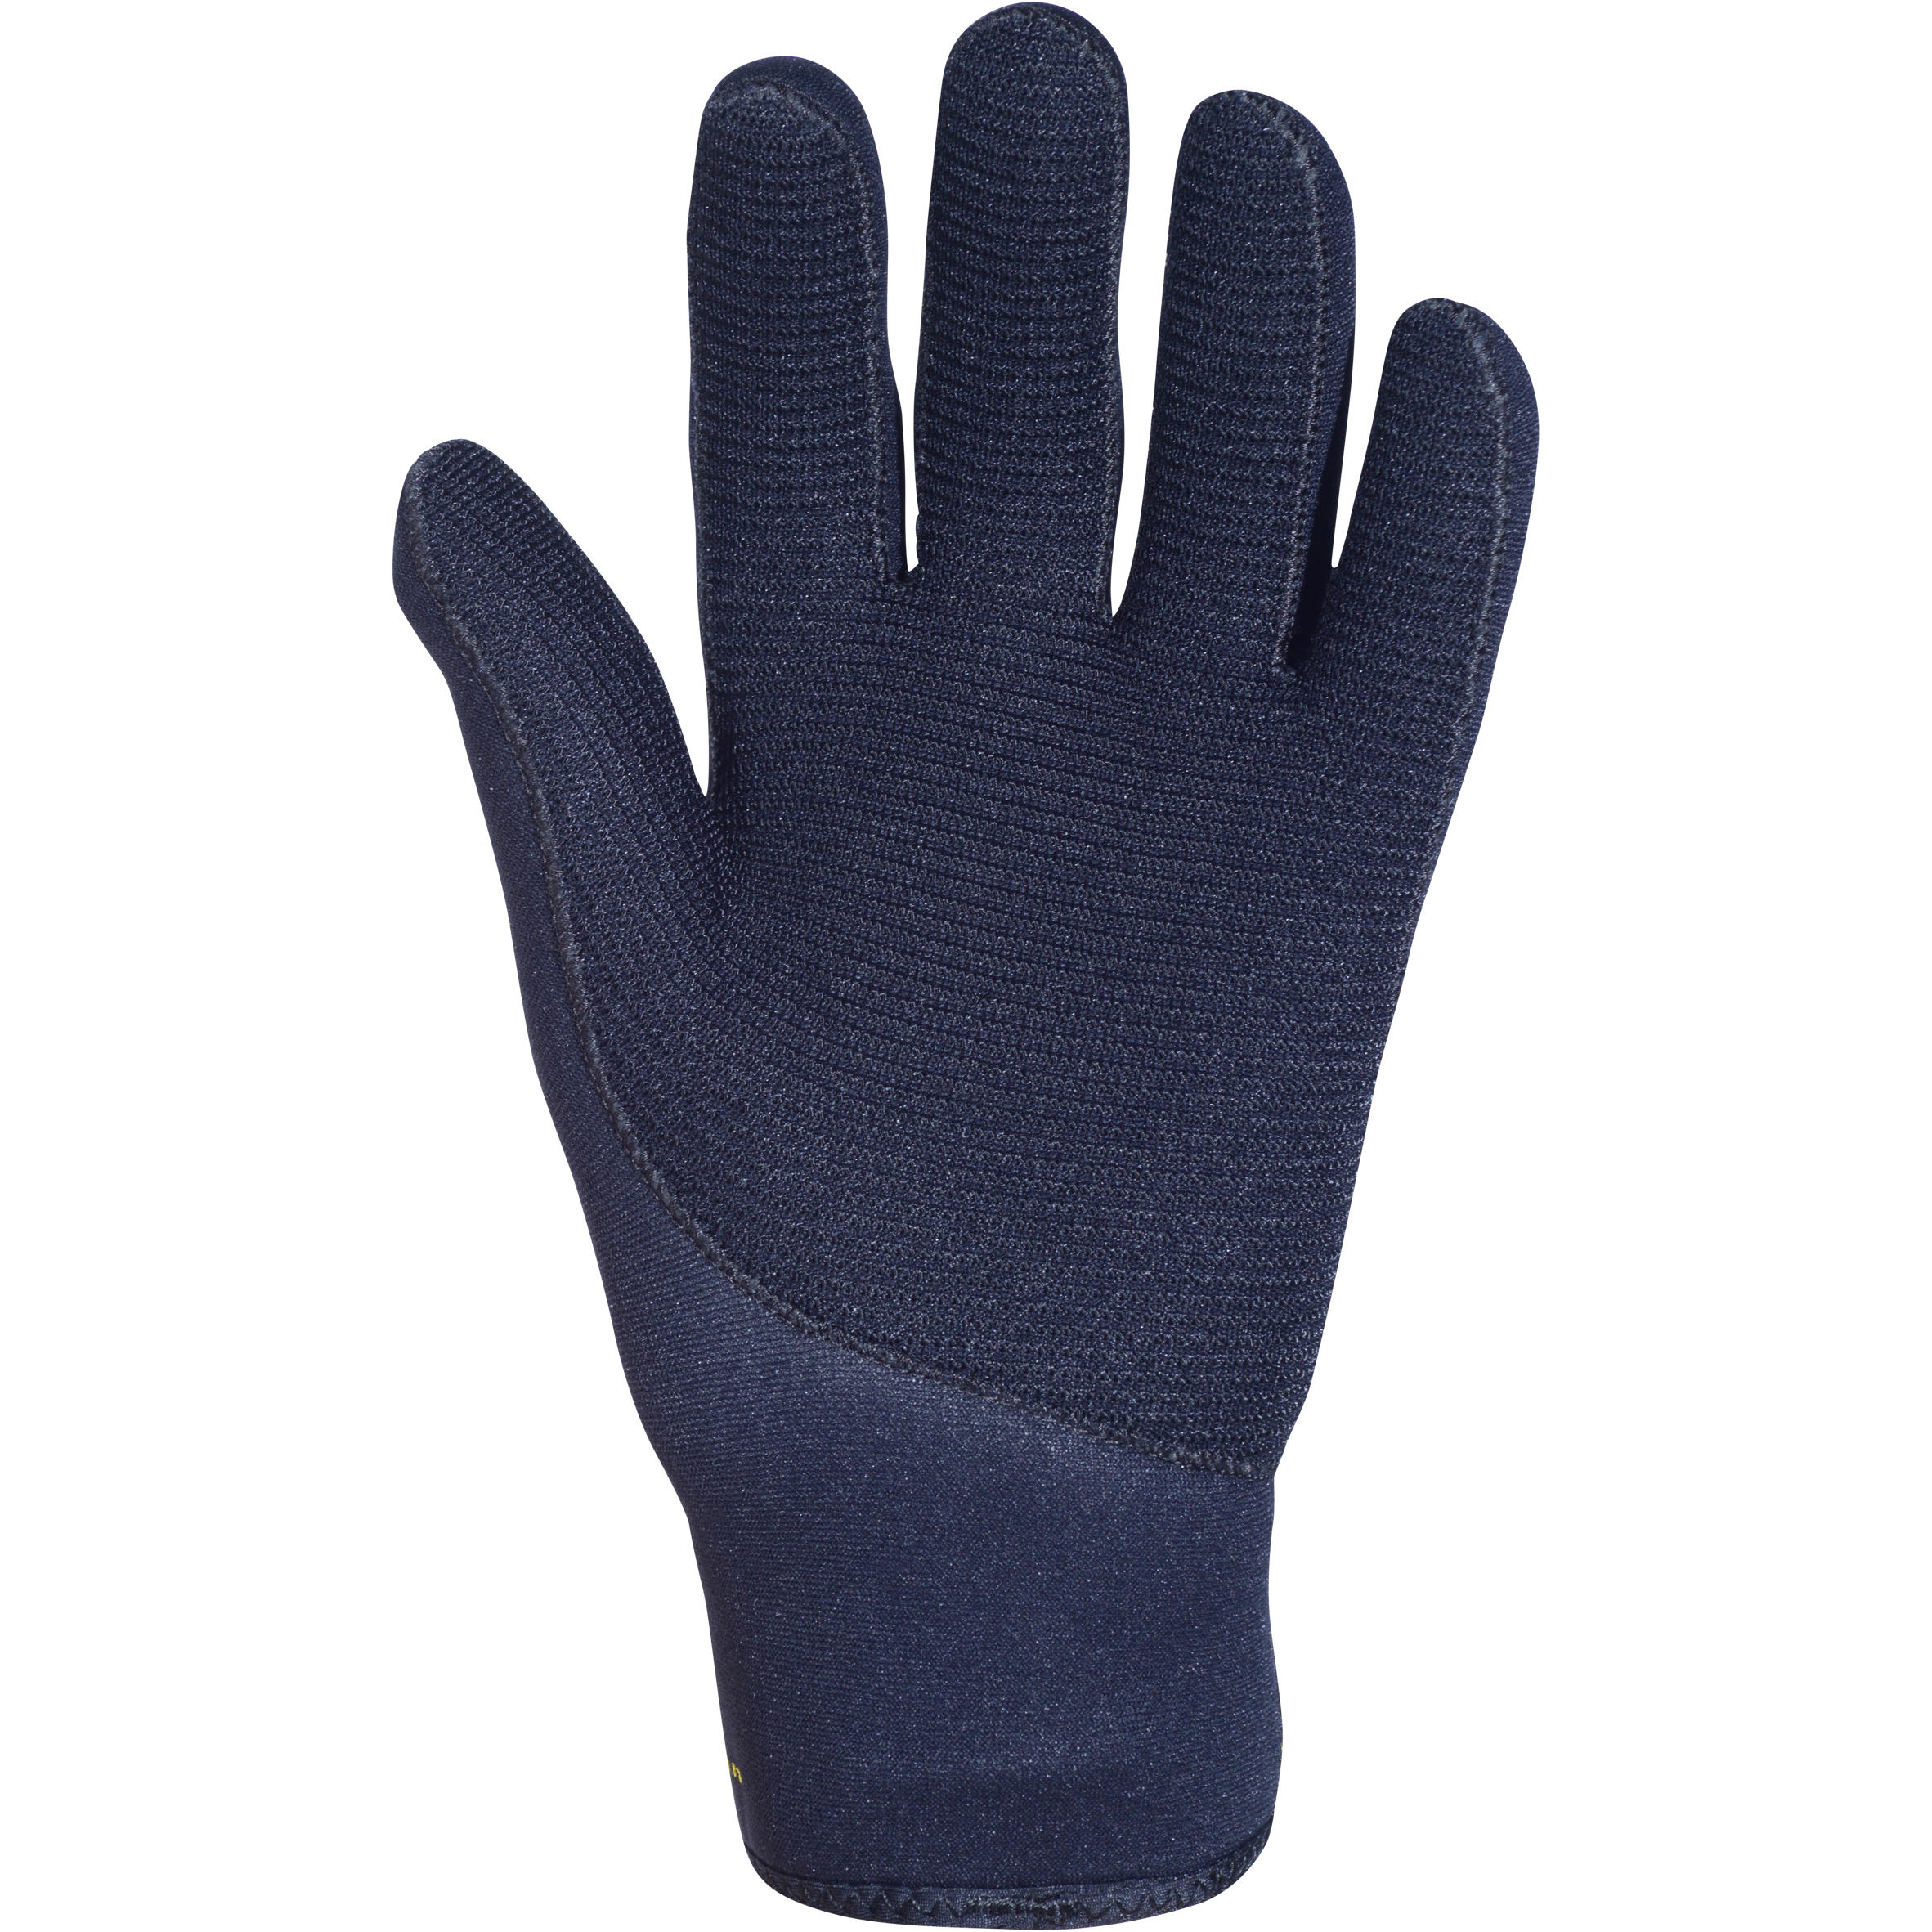 Diving gloves 3 mm neoprene black 2/9